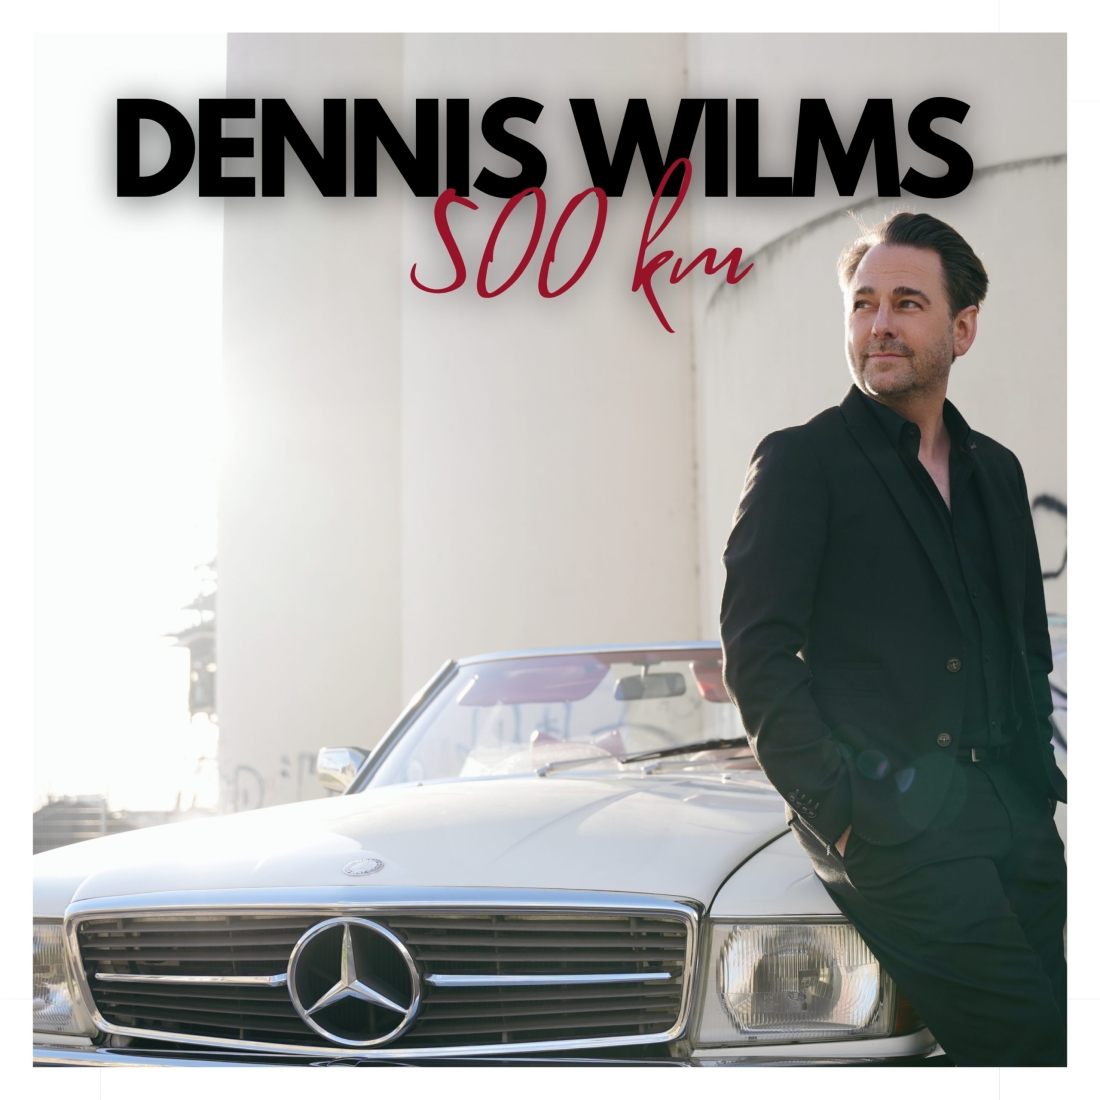 Dennis Wilms - 500km (Klondike Records)